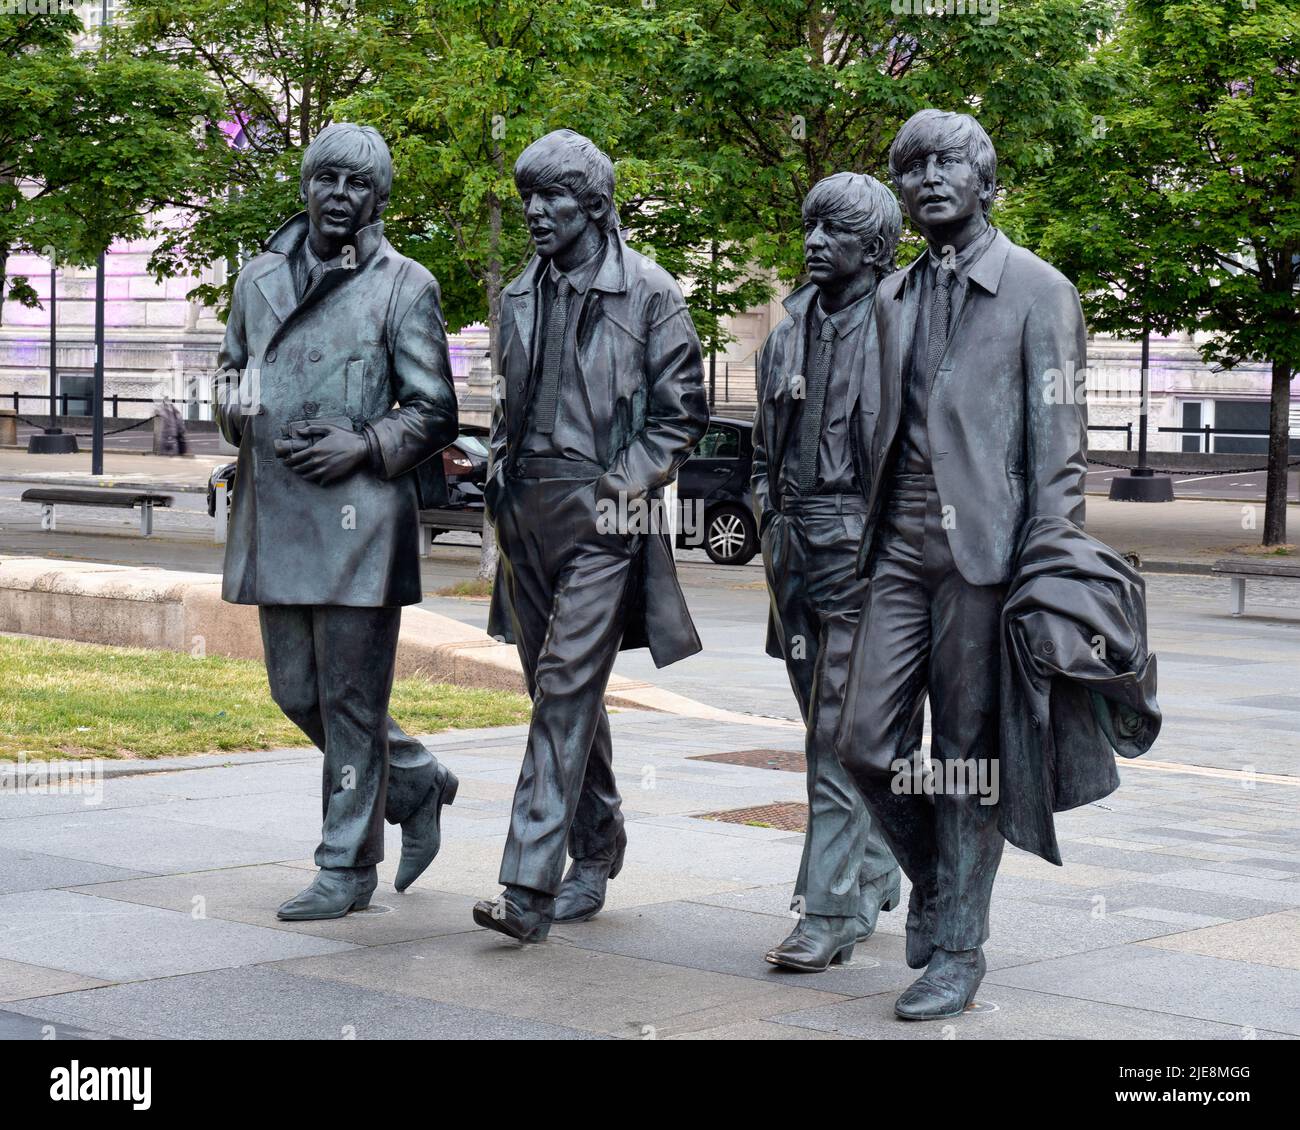 Liverpool, Regno Unito - 2nd giugno 2022: Statua in bronzo dei Beatles situata sul lungomare Pier Head di Liverpool, scolpita da Andrew Edwards Foto Stock